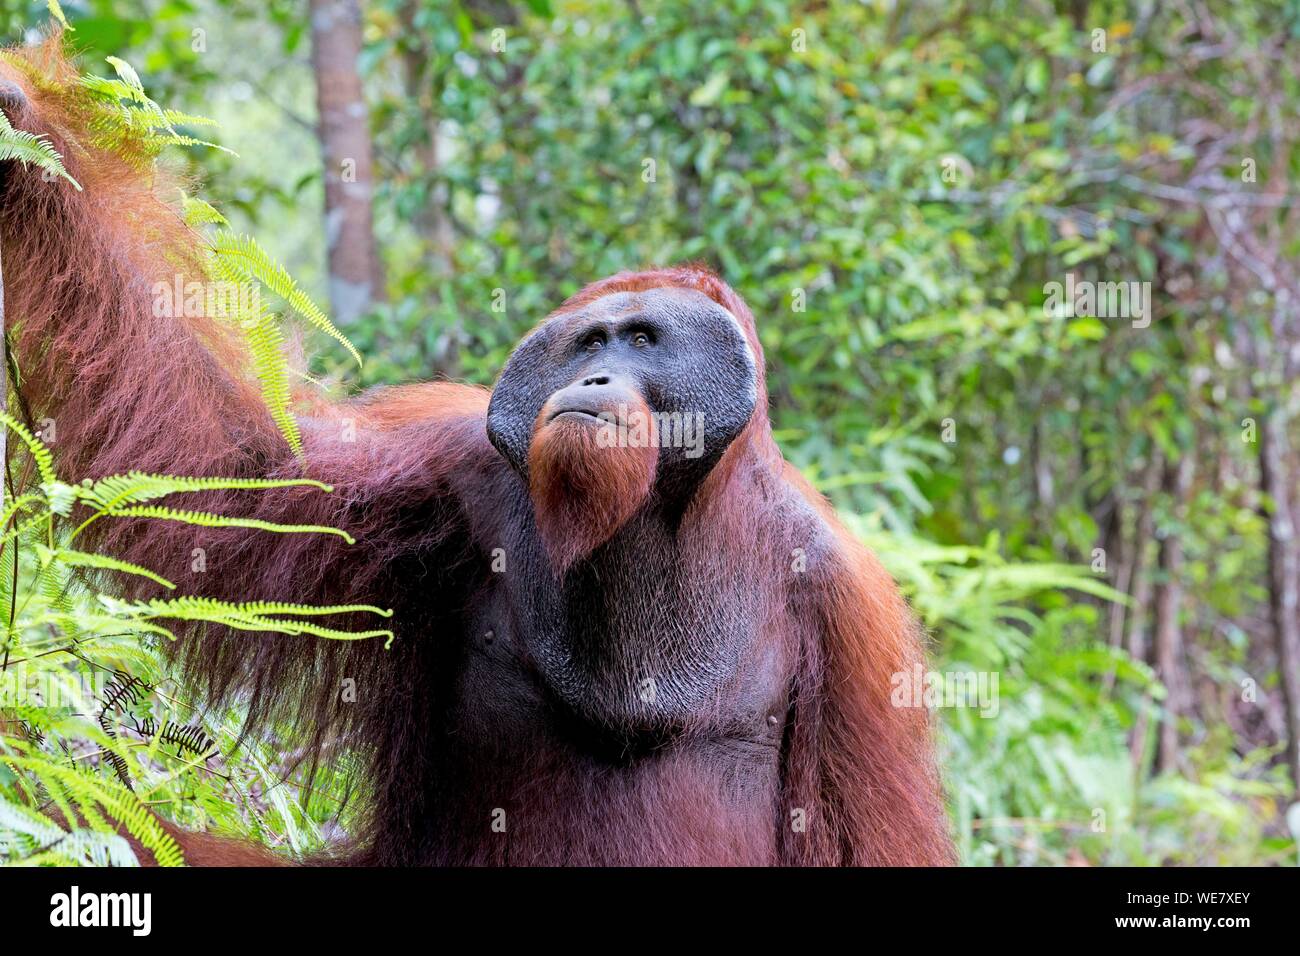 Indonesia, Borneo, Tanjung Puting National Park, Bornean orangutan (Pongo pygmaeus pygmaeus), adult male, walking on the ground Stock Photo